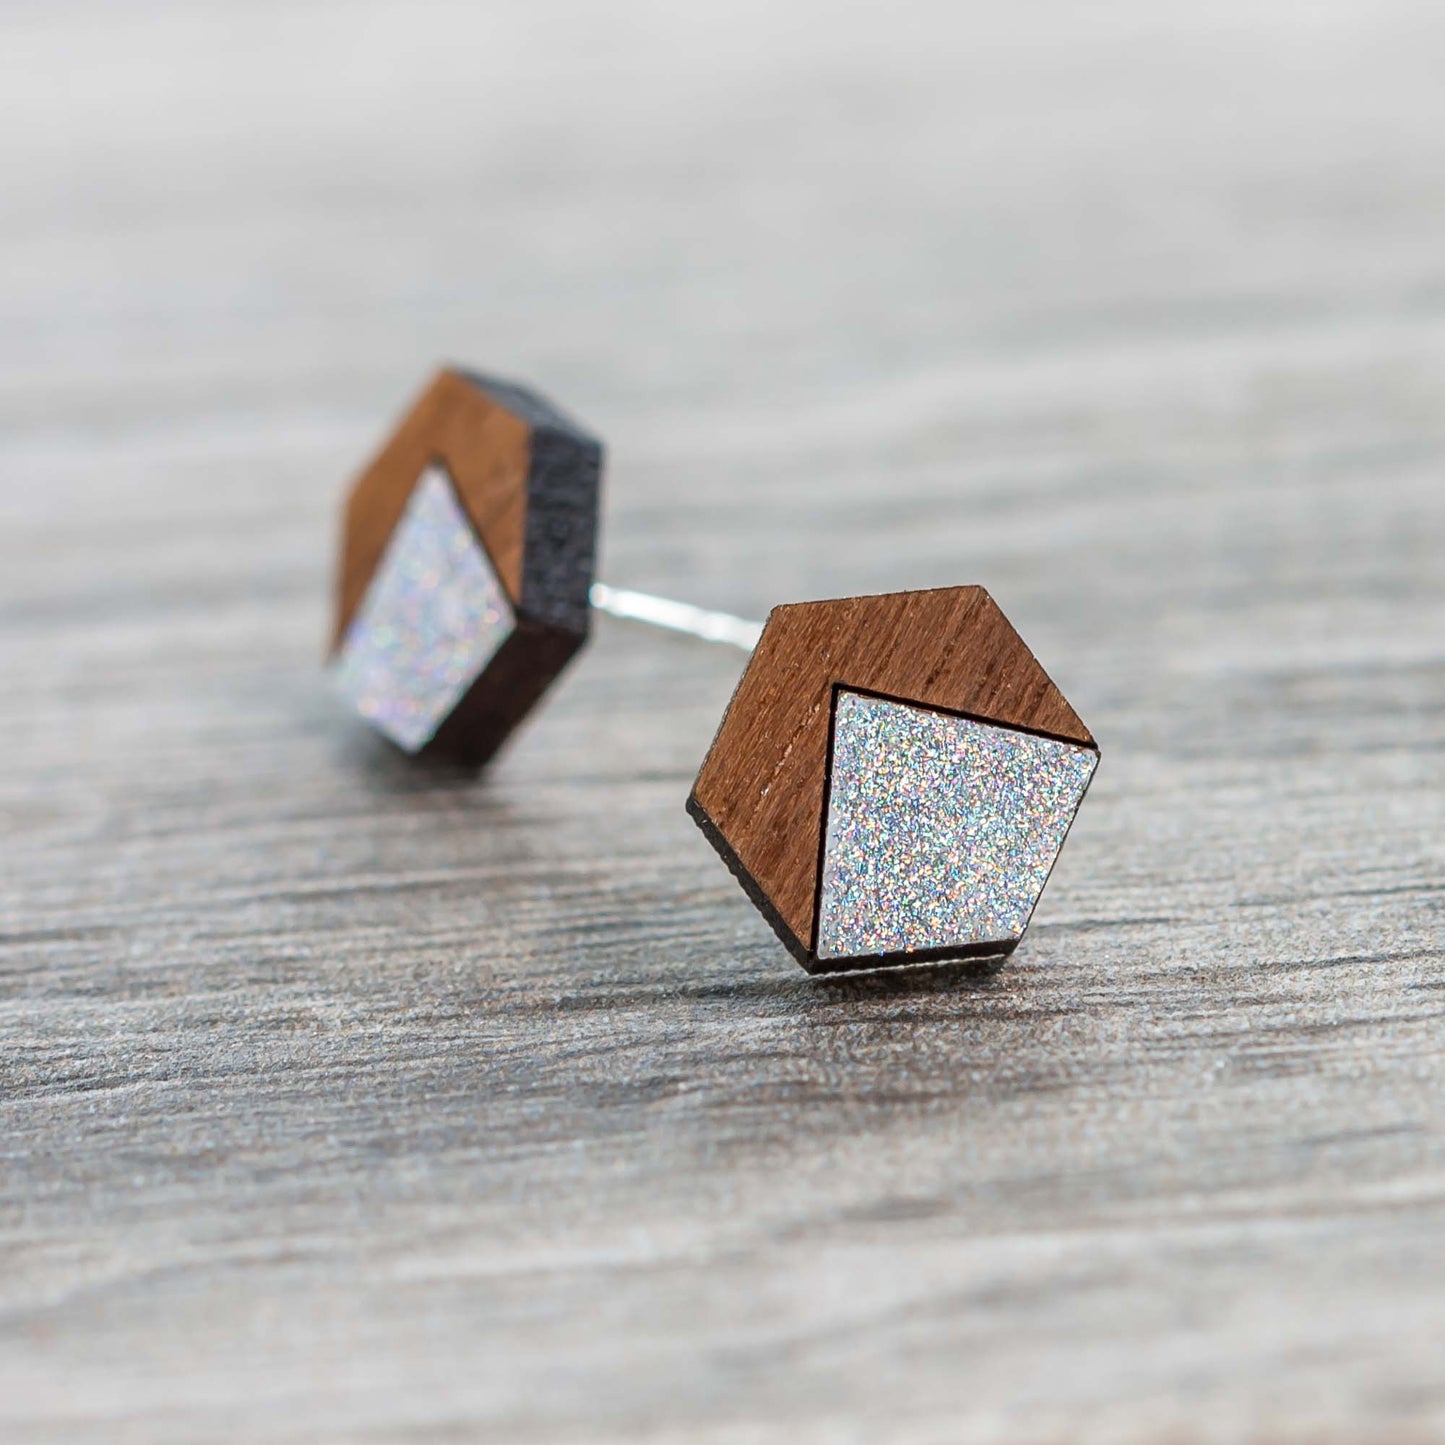 Wooden Laser Cut Earrings - Walnut with Silver Mountain Hexagon - by LeeMo Designs in Bend, Oregon